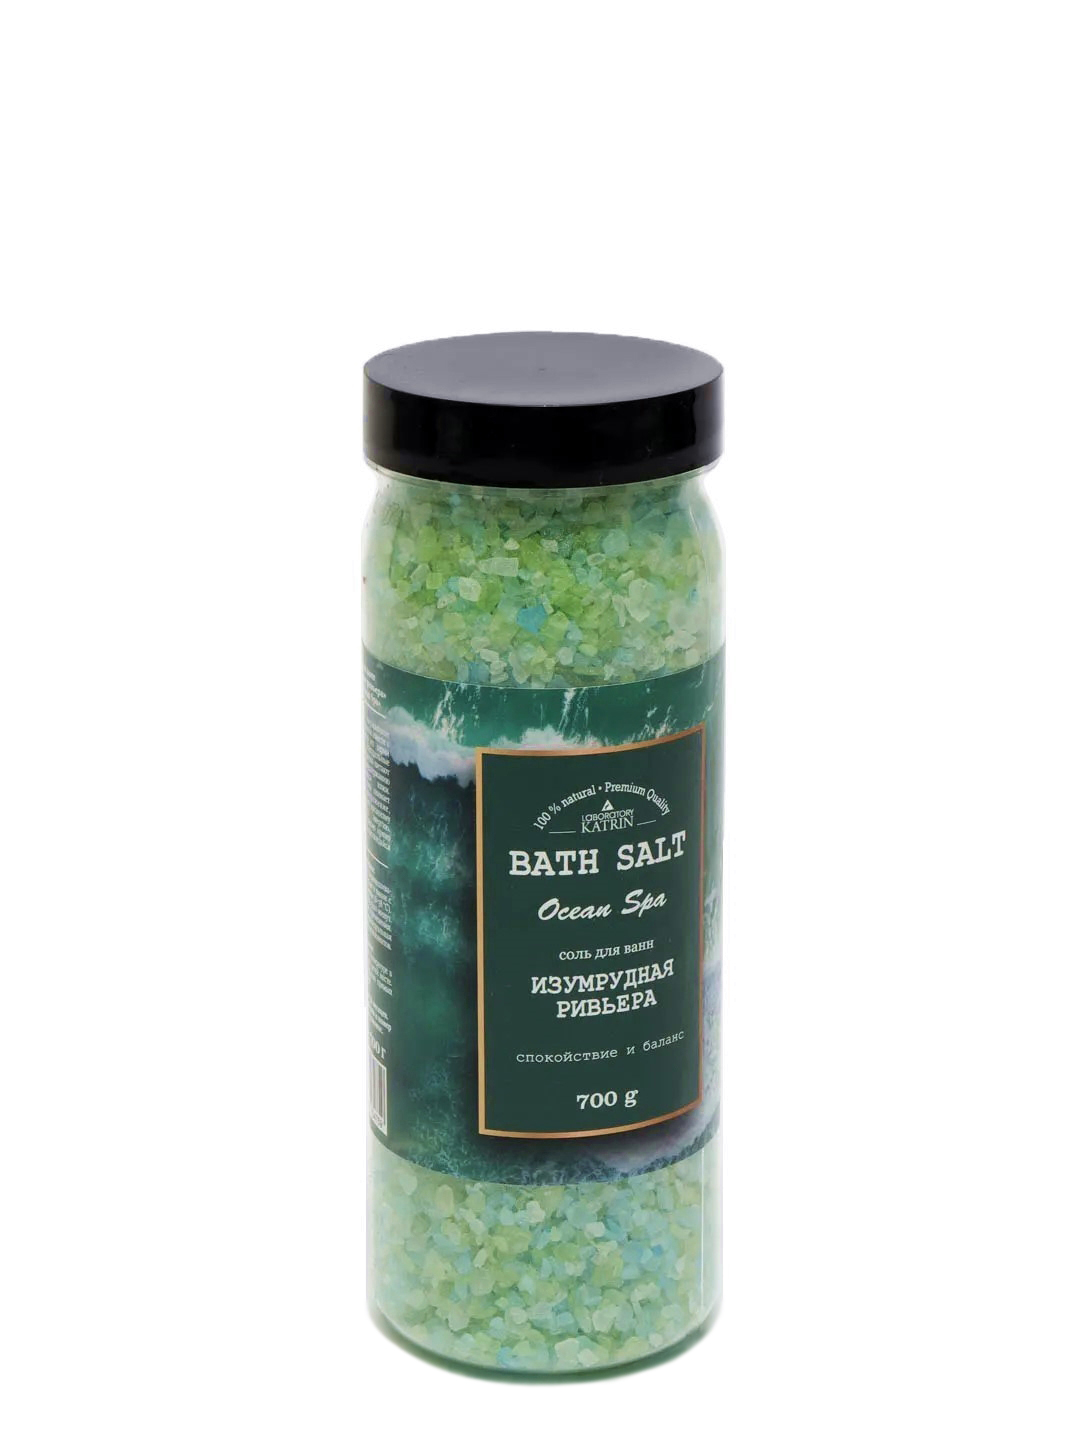 Соль для ванн Laboratory KATRIN Ocean spa Изумрудная ривьера 700 г dr mineral’s соль для ванн jewels of indian ocean 2700